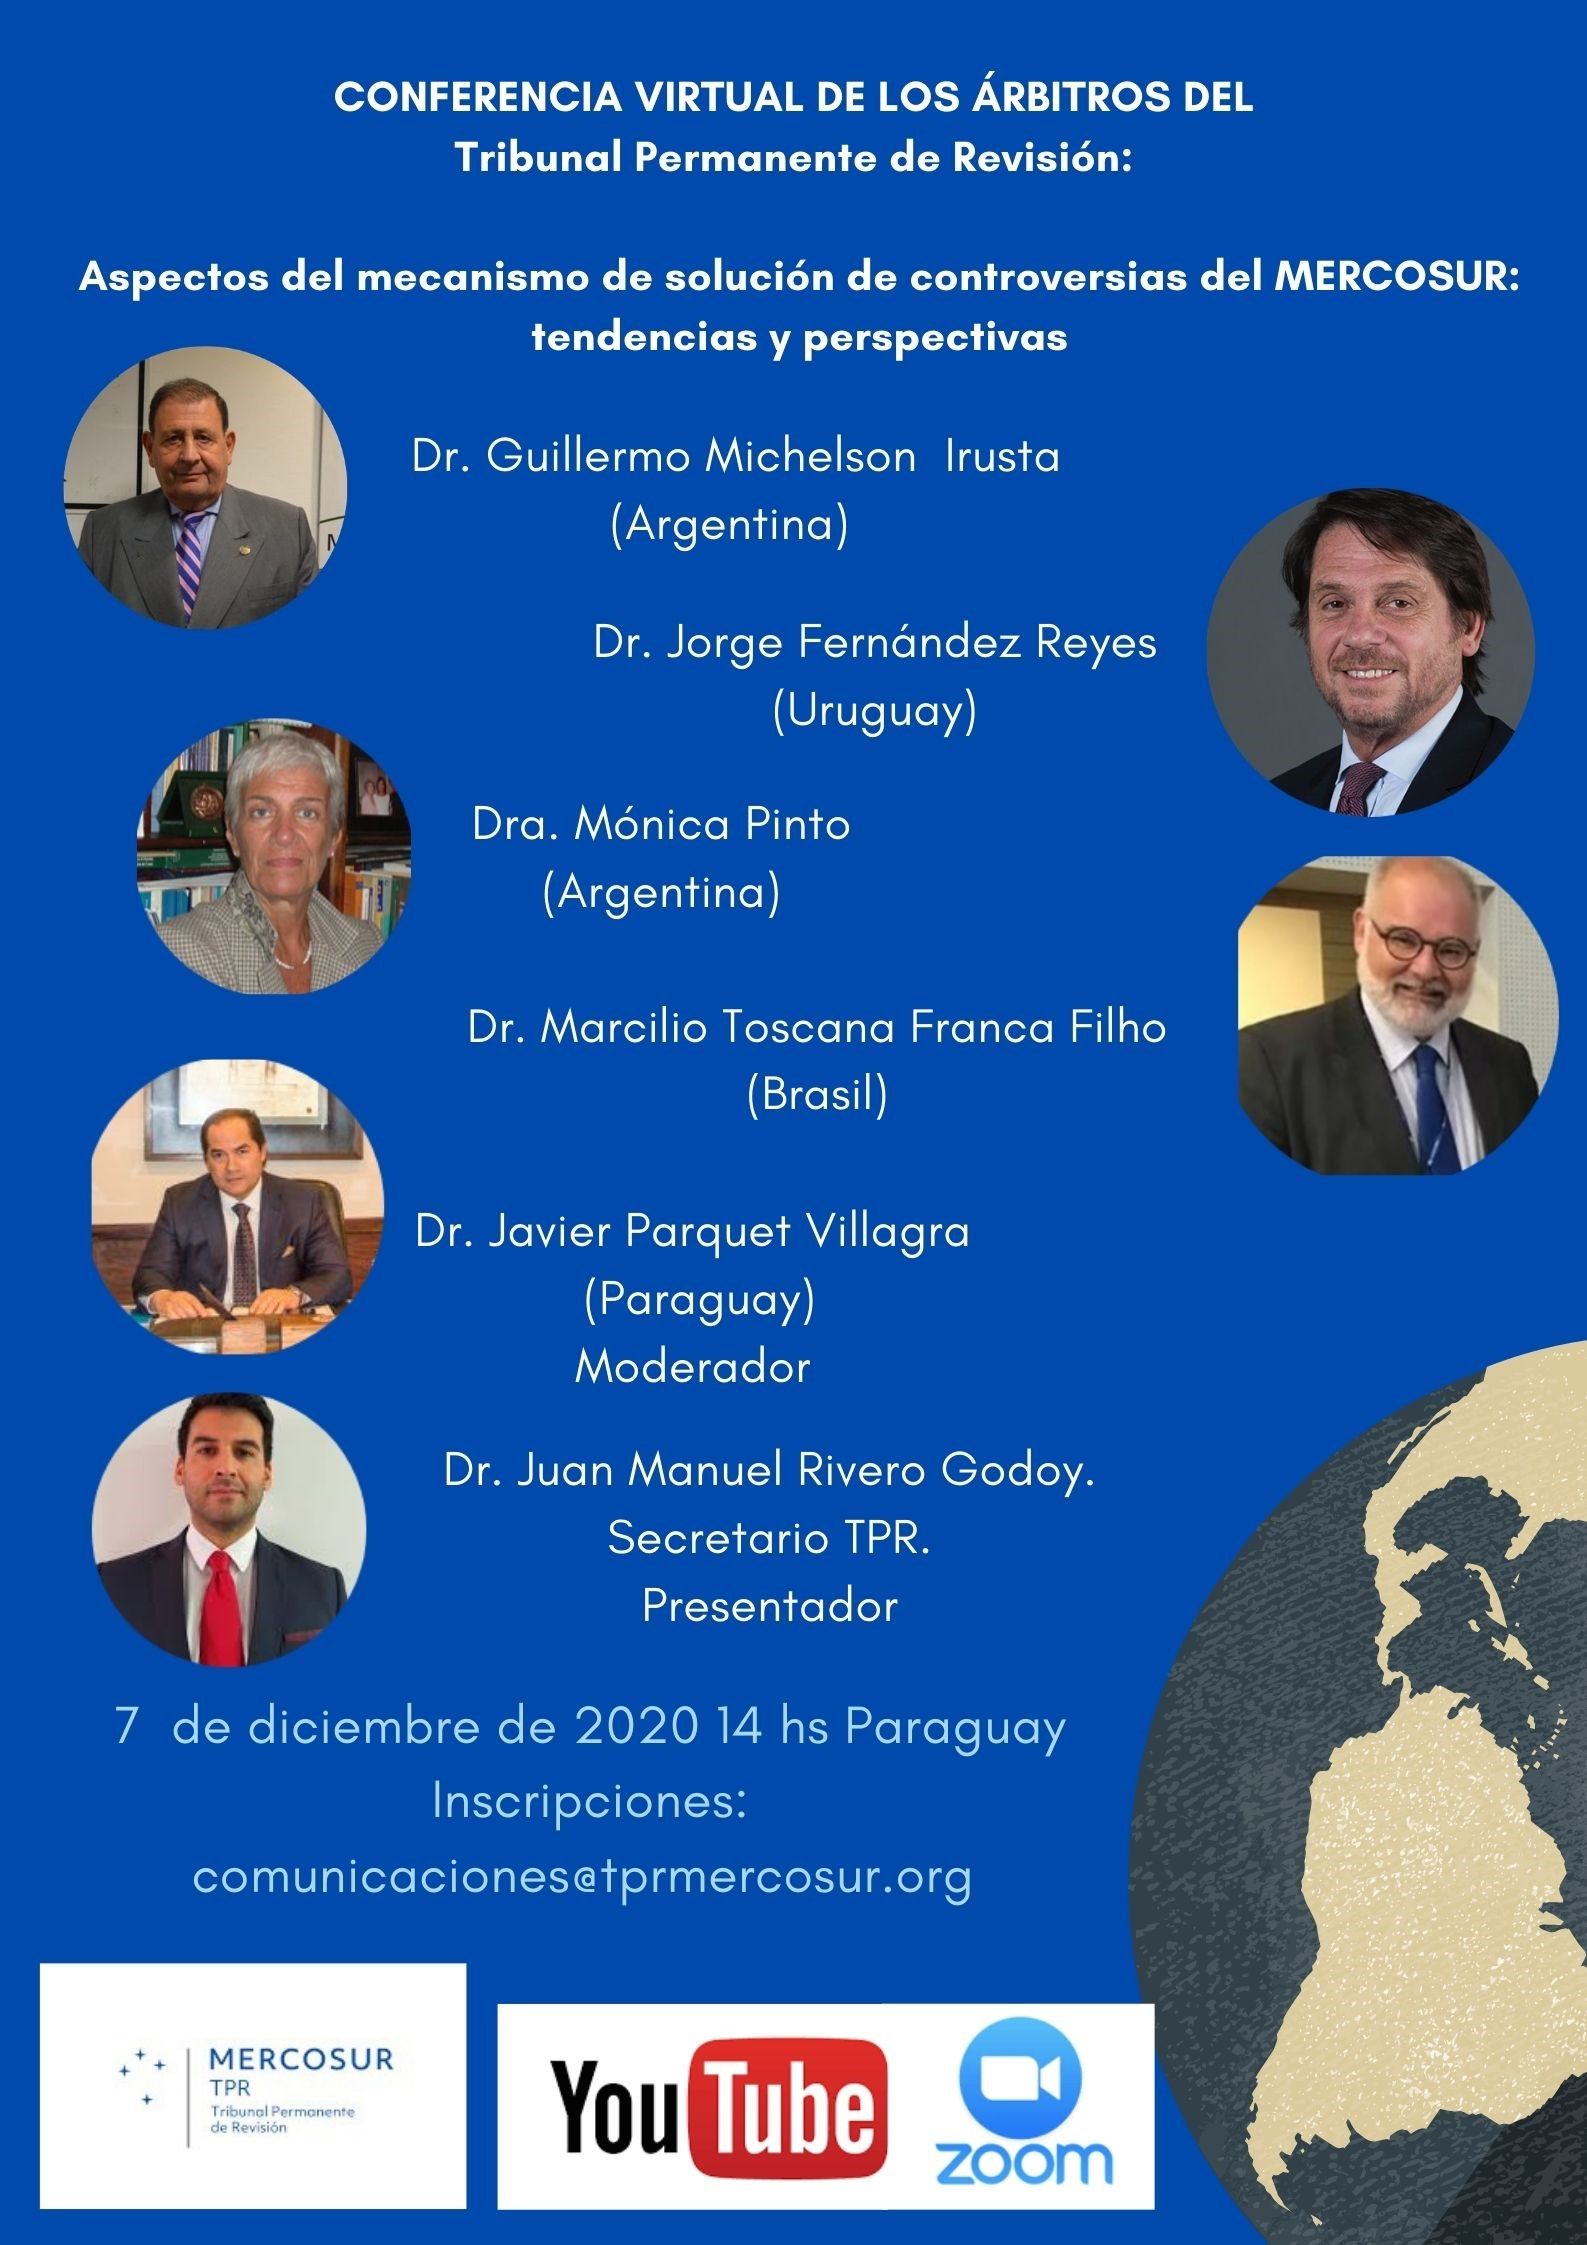 Conferencia virtual de los Árbitros del Tribunal Permanente de Revisión del Mercosur (TPR)